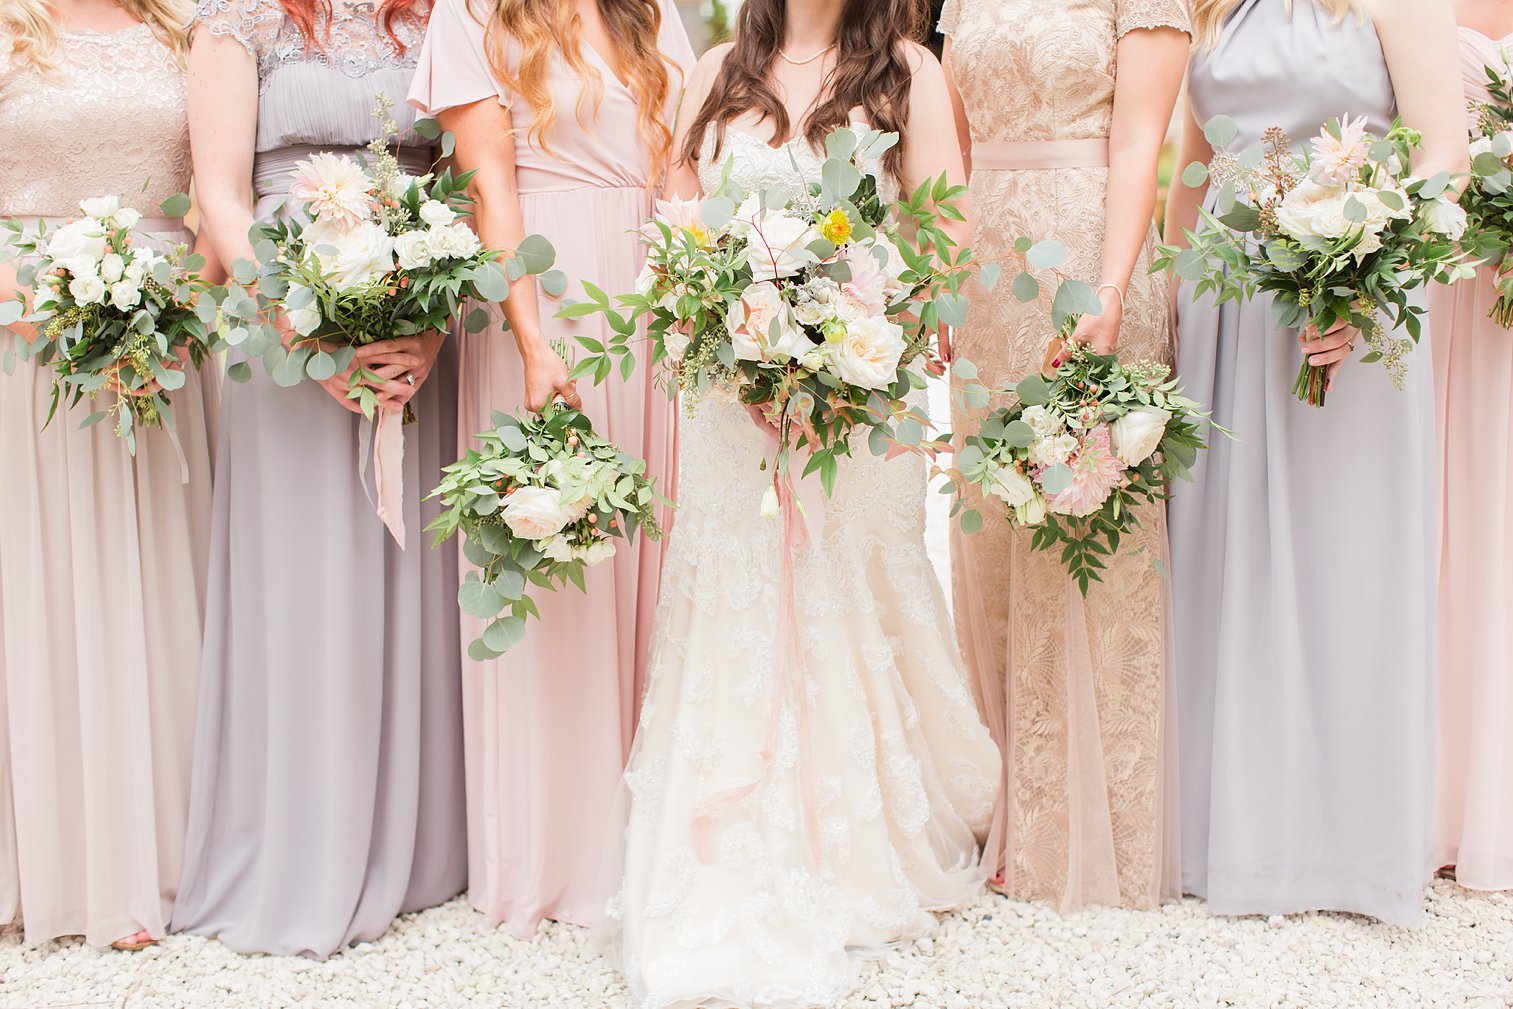 Blush-bridesmaid dresses-bouquets-bride-wedding party-beautiful-mismatched dresses